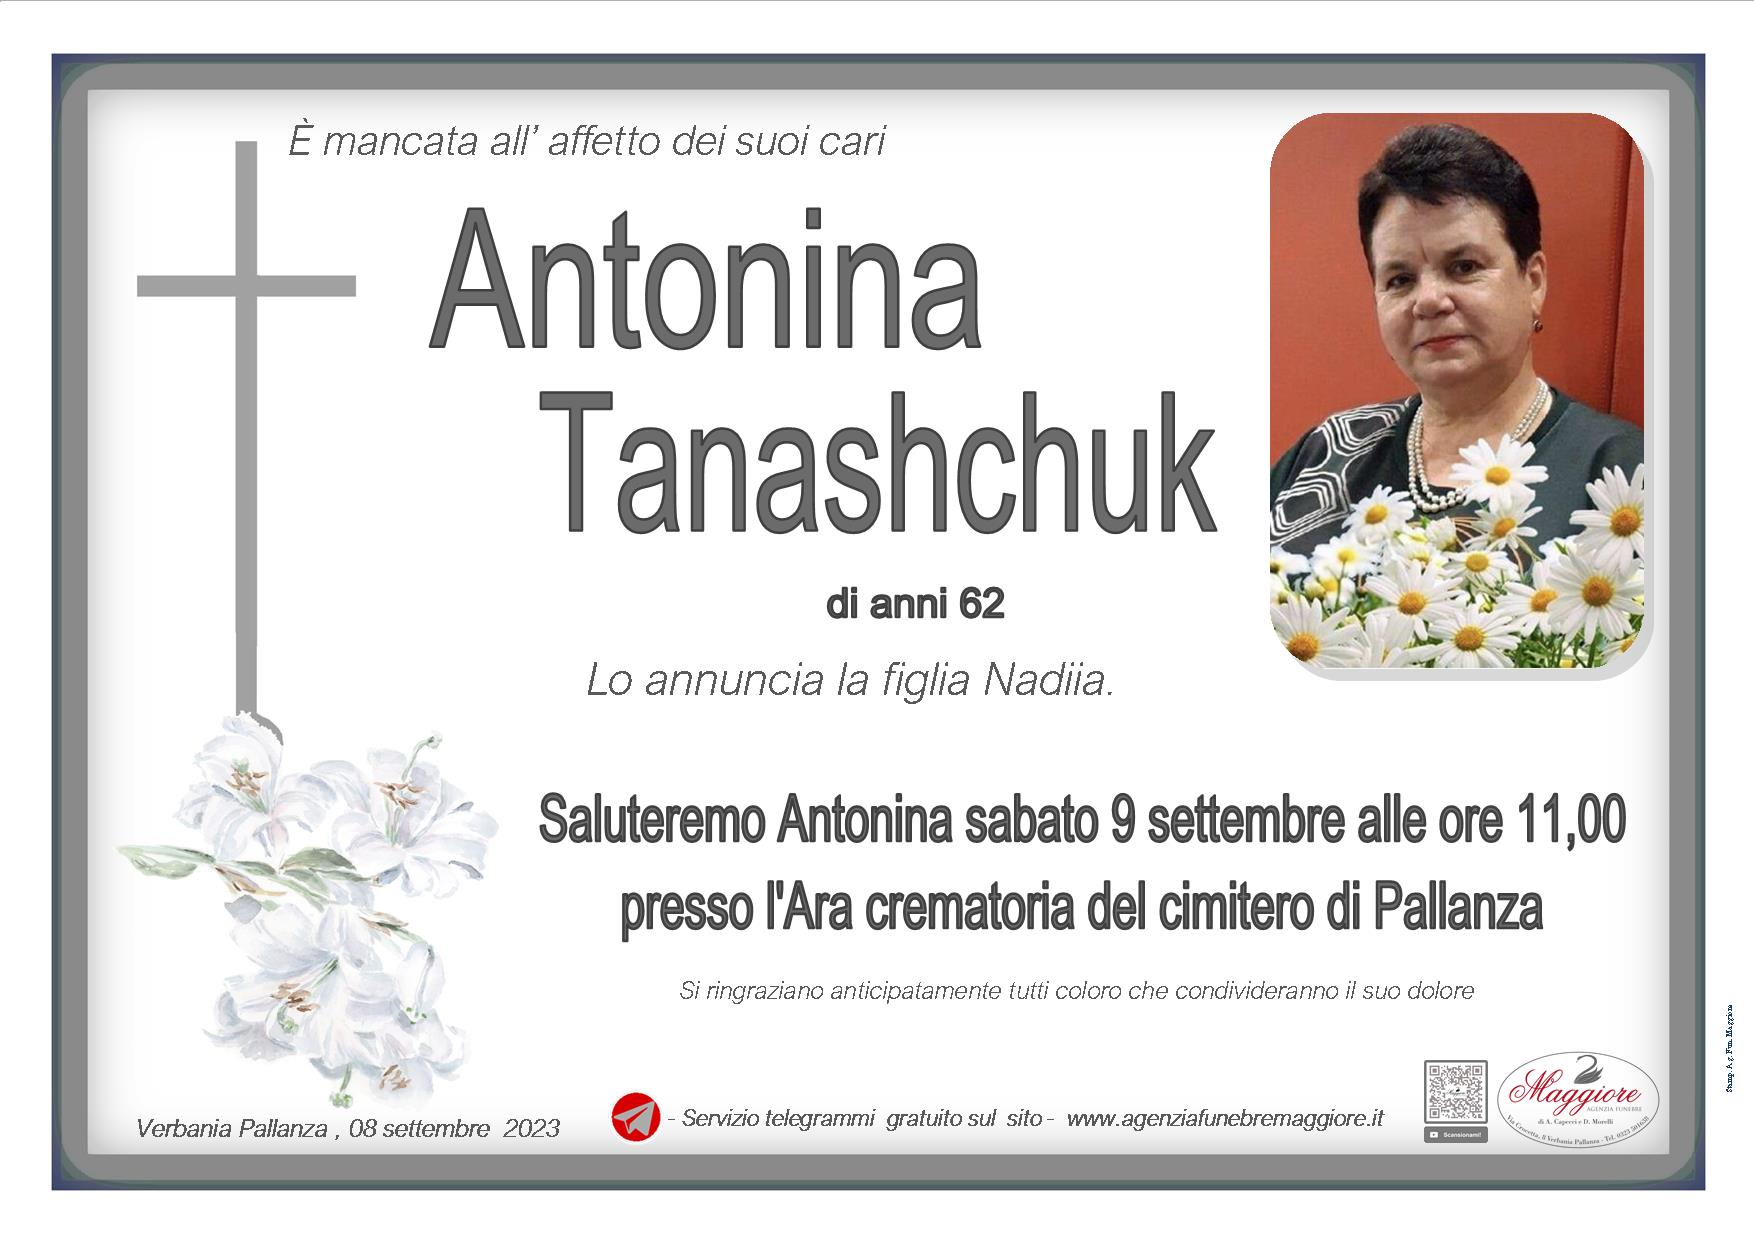 Antonina Tanashchuk